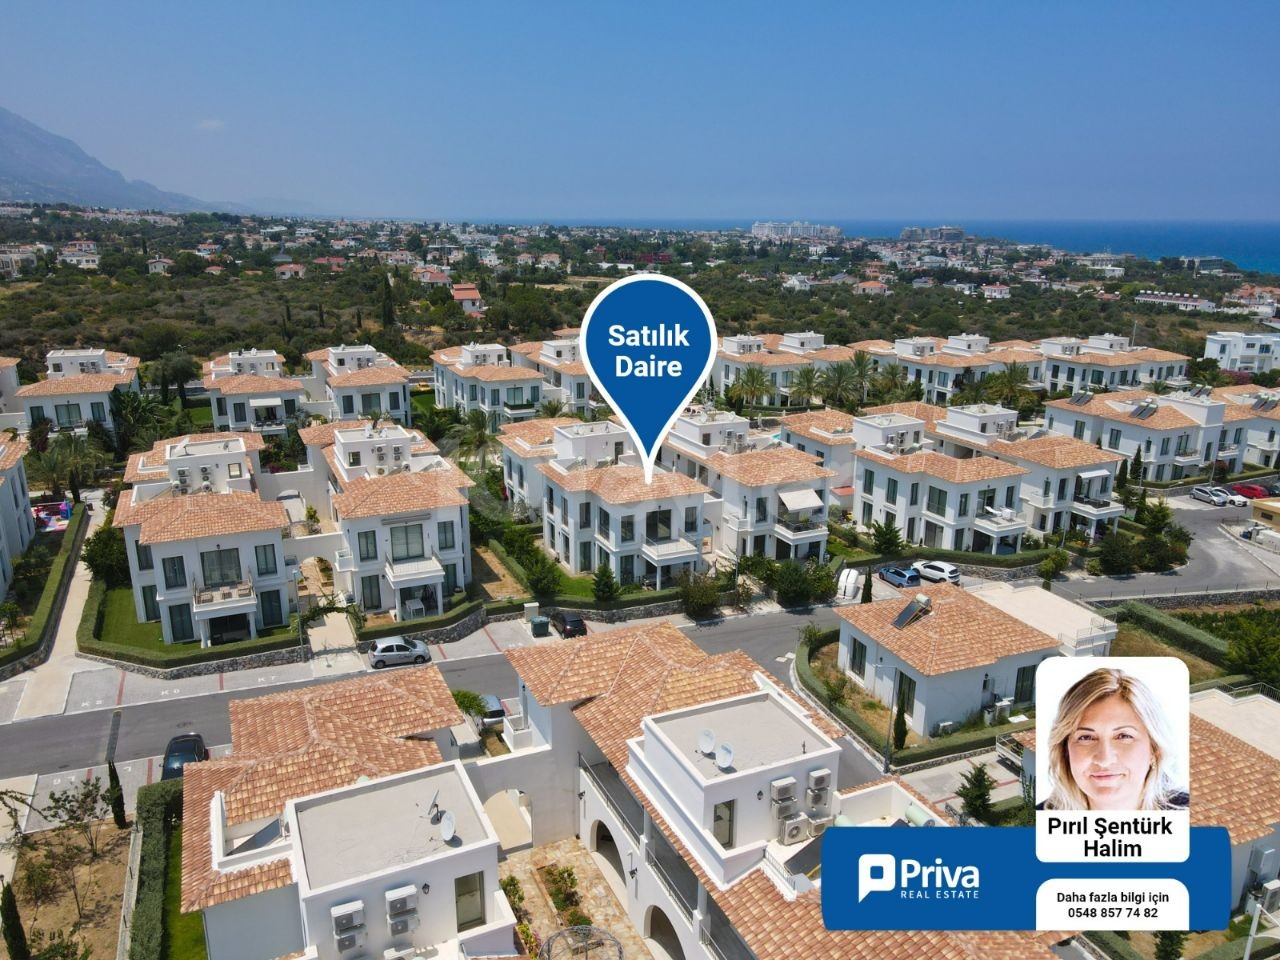 Кипрский Кирения Таун Хаус продается на участке 2+1, роскошный, с бассейном и охраной, отличное расположение рядом с морем ** 